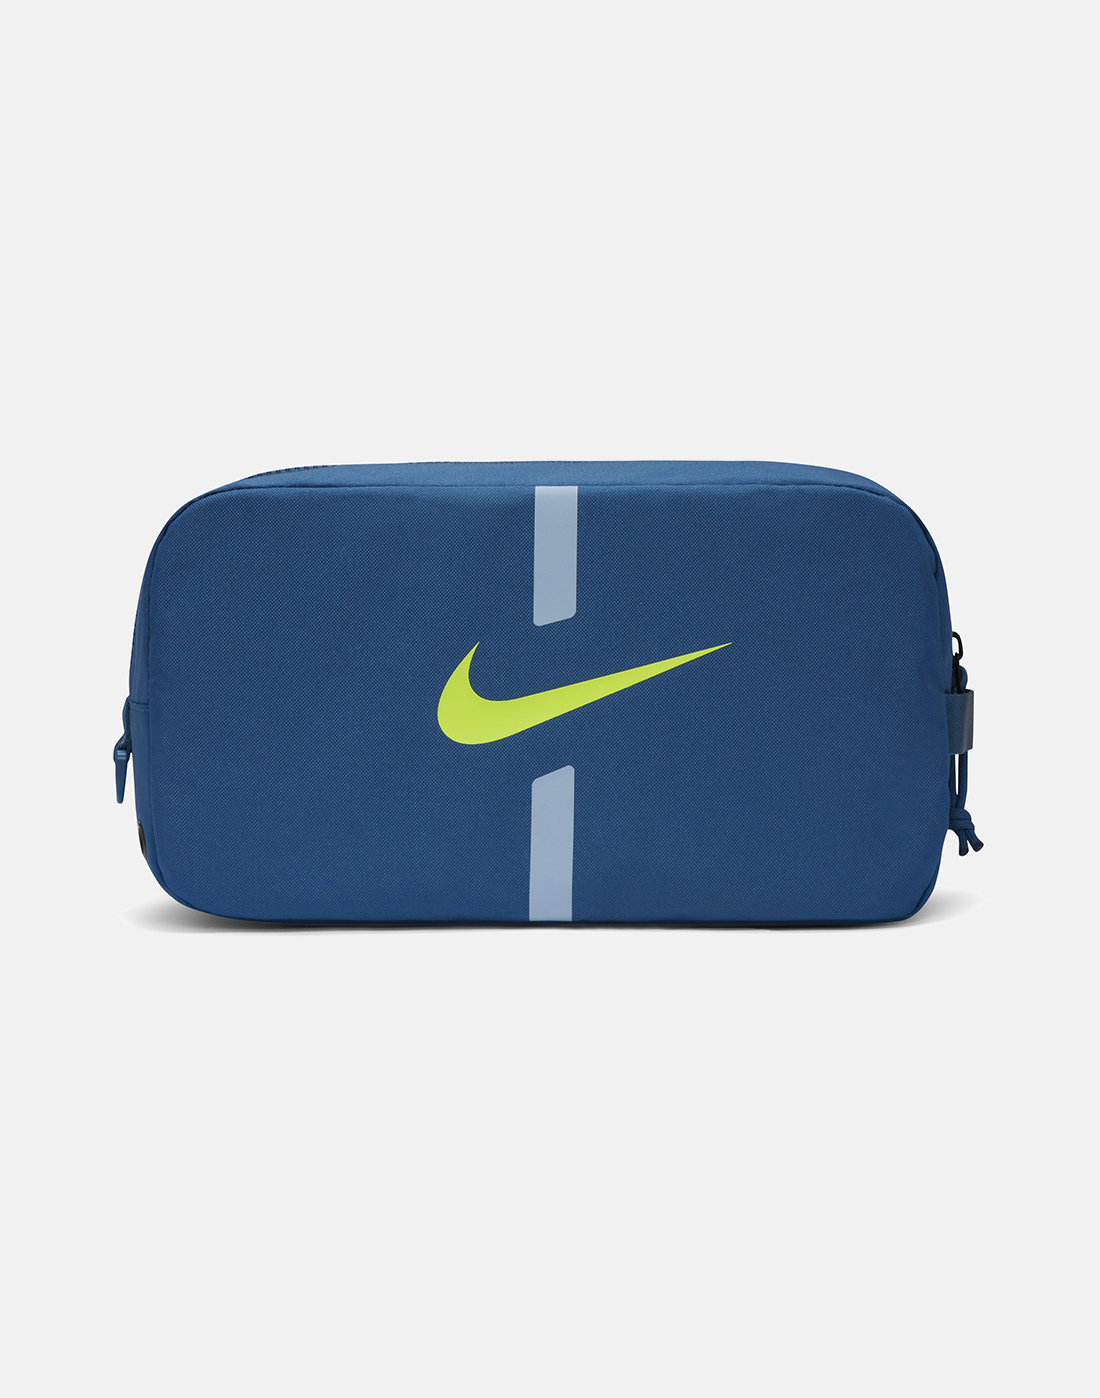 Nike Academy Shoe Bag - Blue | Life Style Sports EU